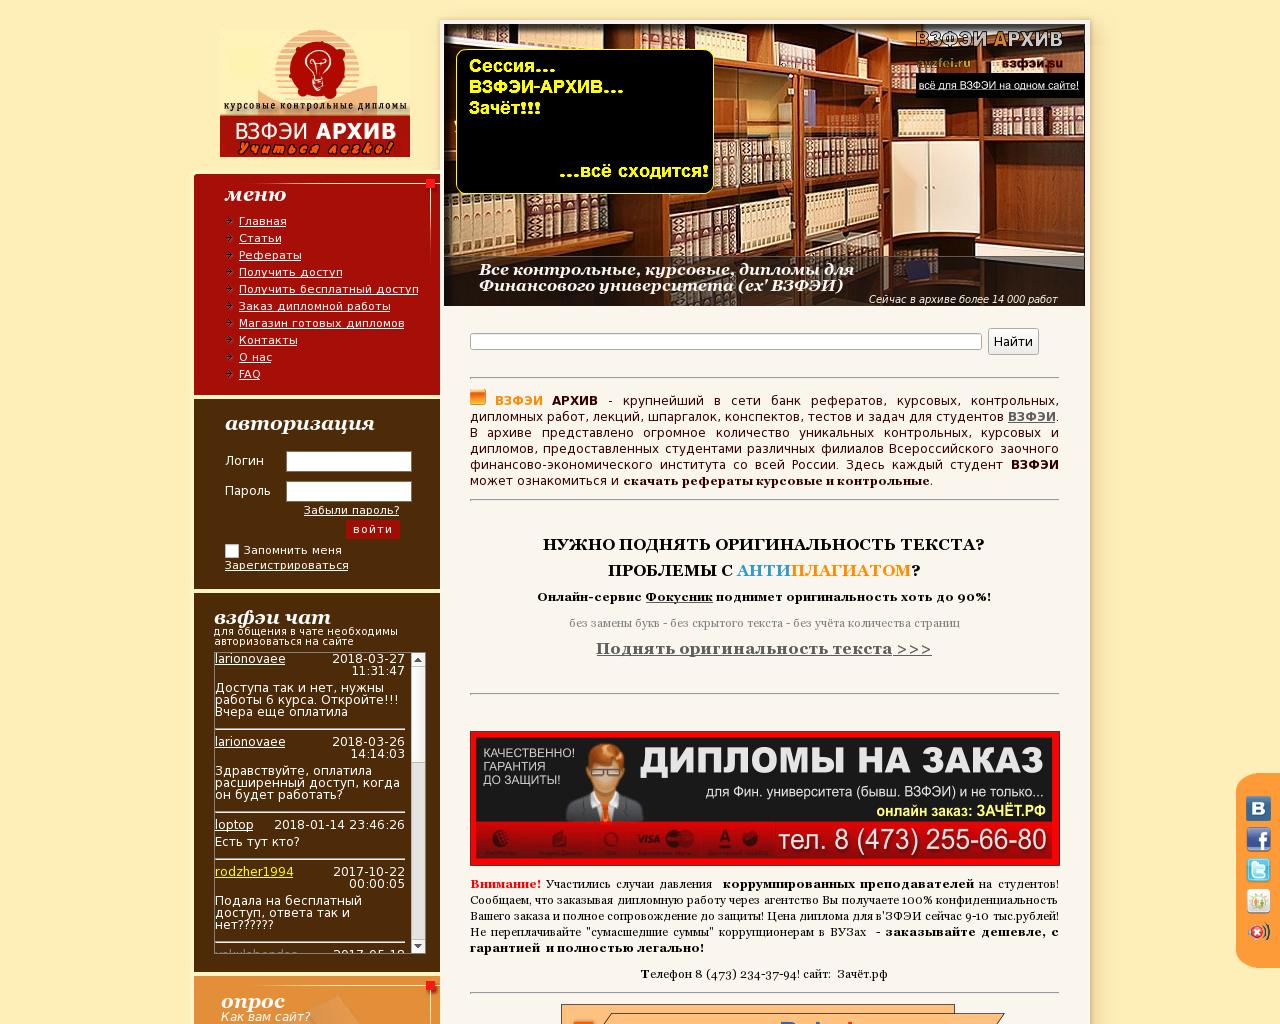 Изображение сайта avzfei.ru в разрешении 1280x1024